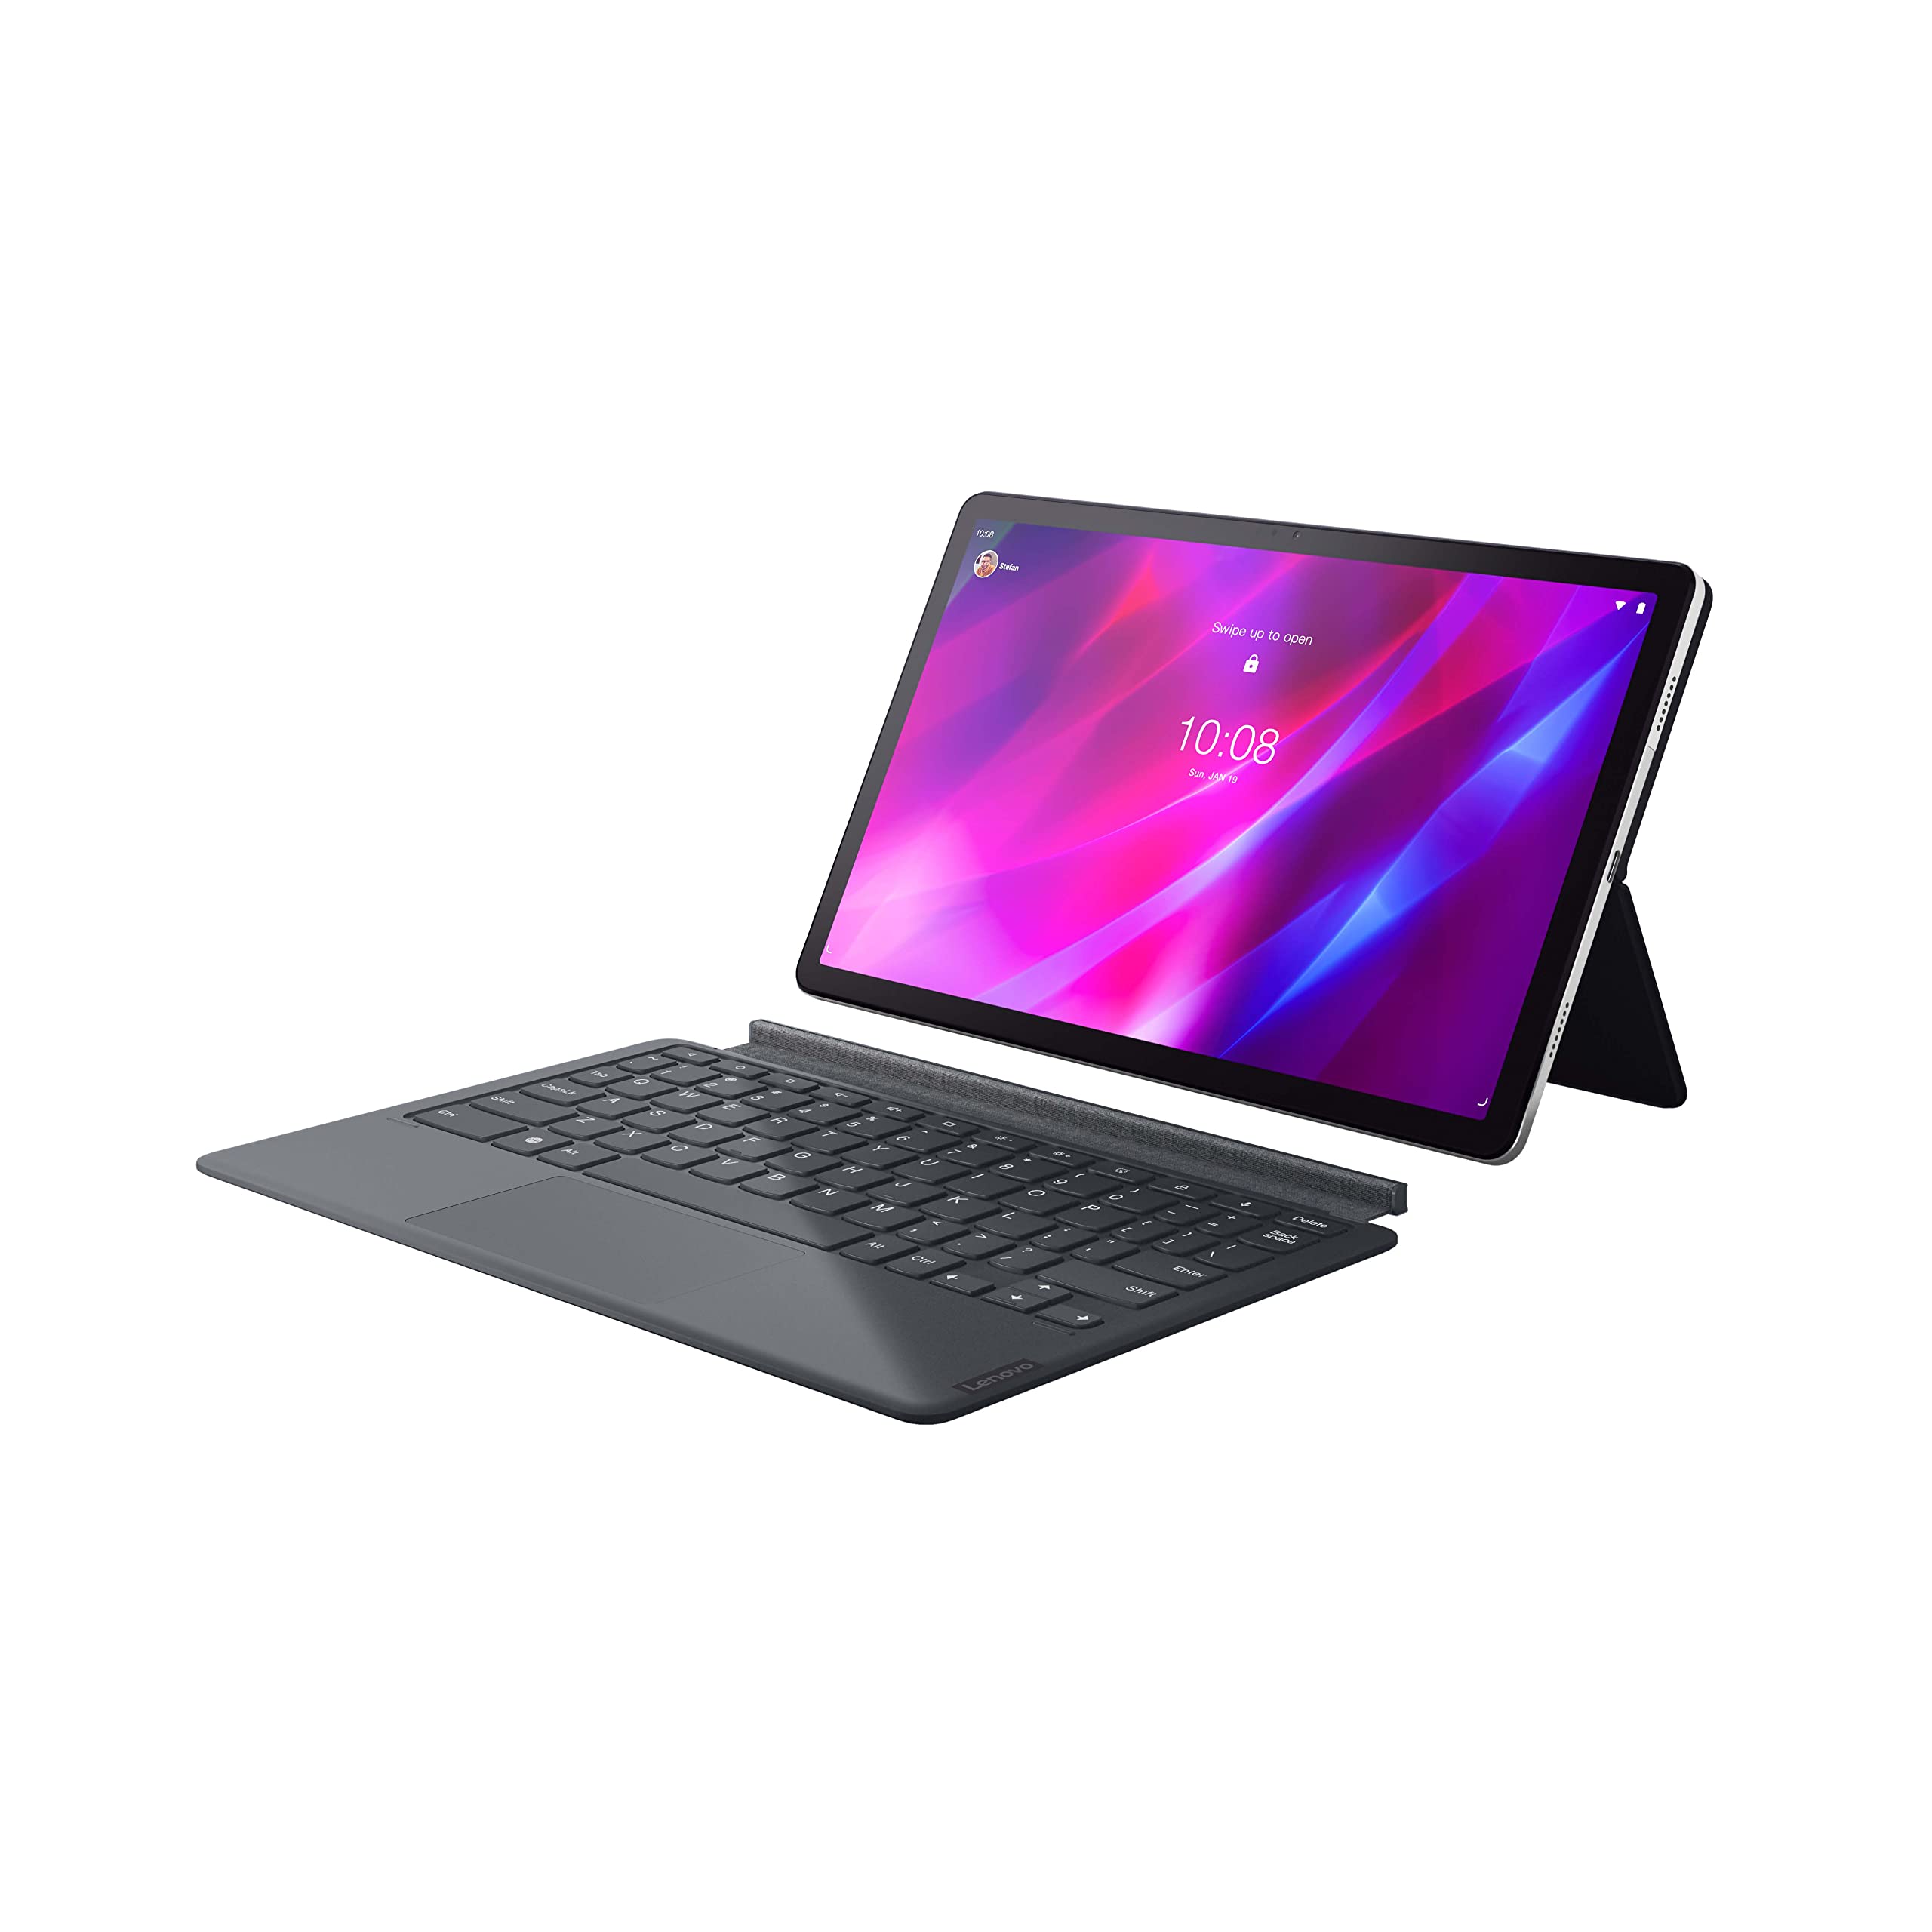  Lenovo - Tab P11 Plus - Tablet - Pantalla 2K de 11' - Procesador MediaTek Octa-Core - Memoria de 4GB - Almacenamiento de 128GB - Dolby Atmos - Android 11 - Bluetooth y Wi-Fi - Batería de larga duración...